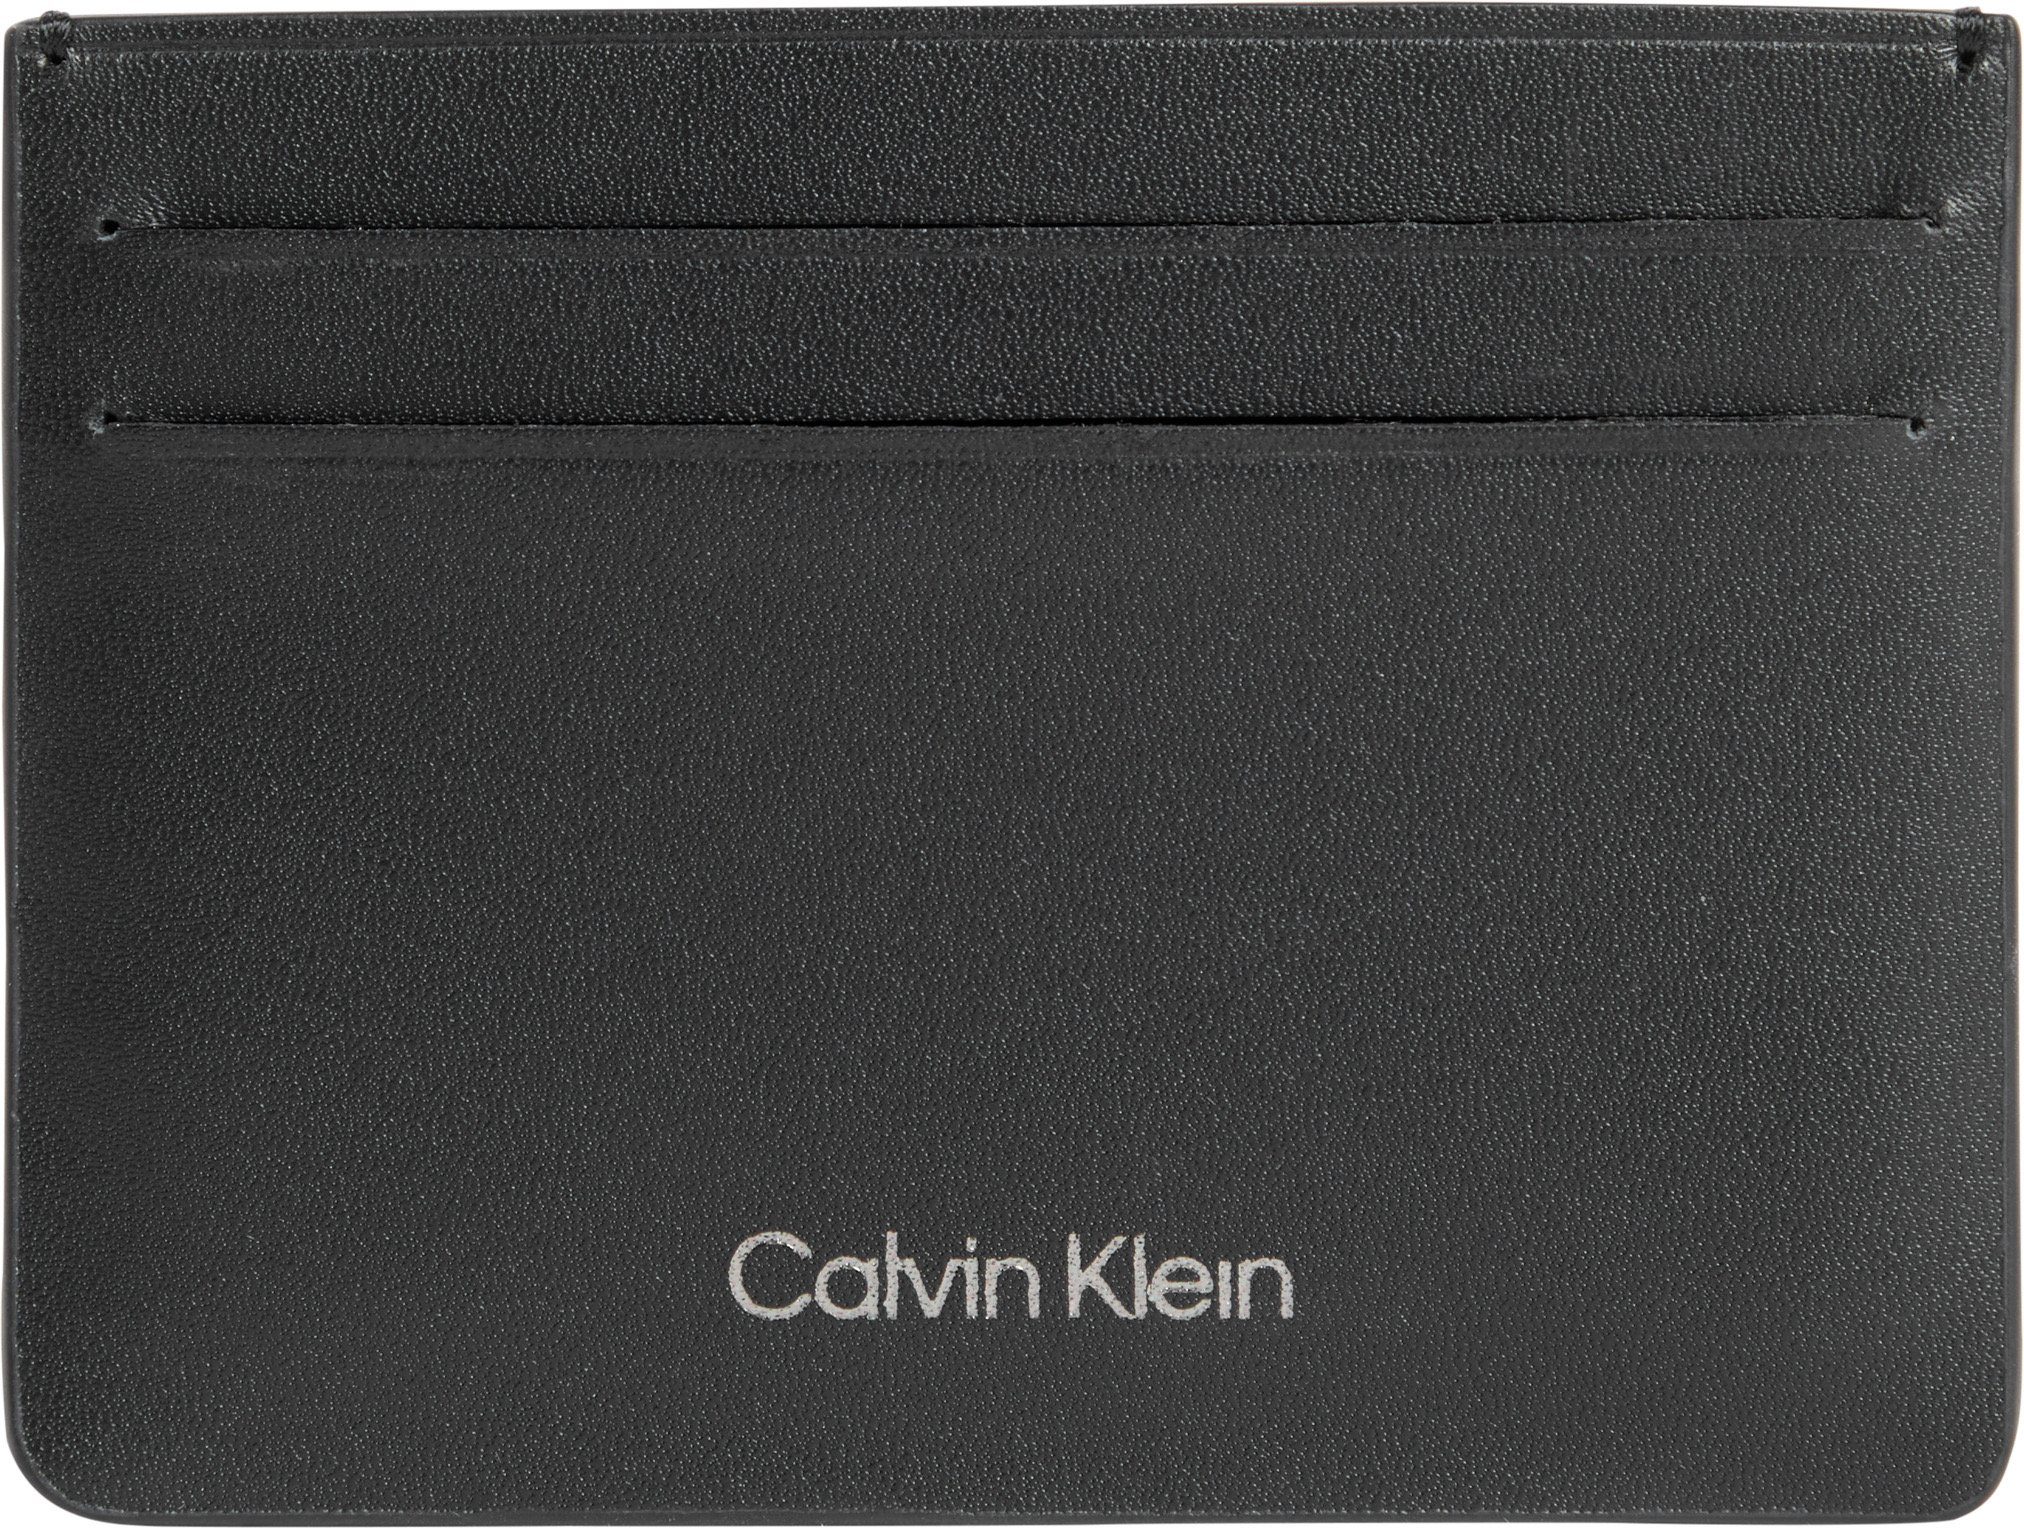 Look in CK Kartenetui Calvin schlichtem CARDHOLDER Klein CONCISE 6CC,